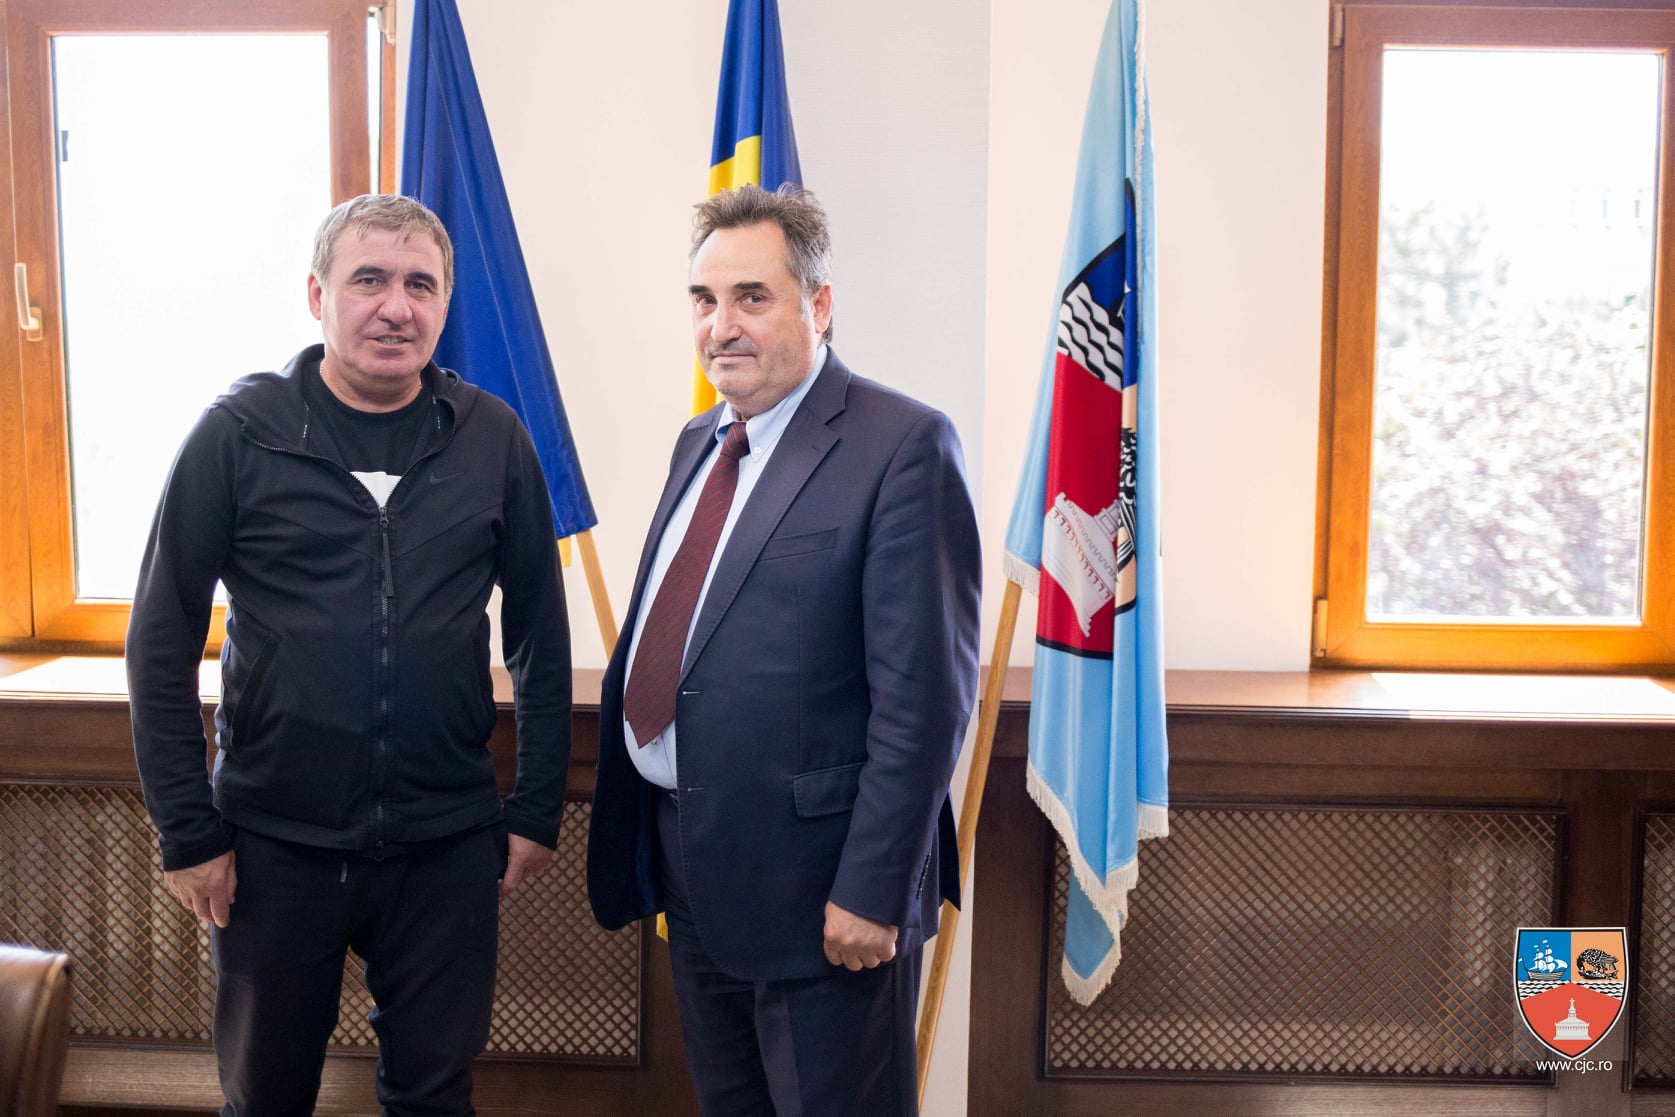 Președintele Consiliului Județean Constanța susține proiectul de fuziune al celor două cluburi de fotbal constănțean, FC Farul Constanța – FC Viitorul